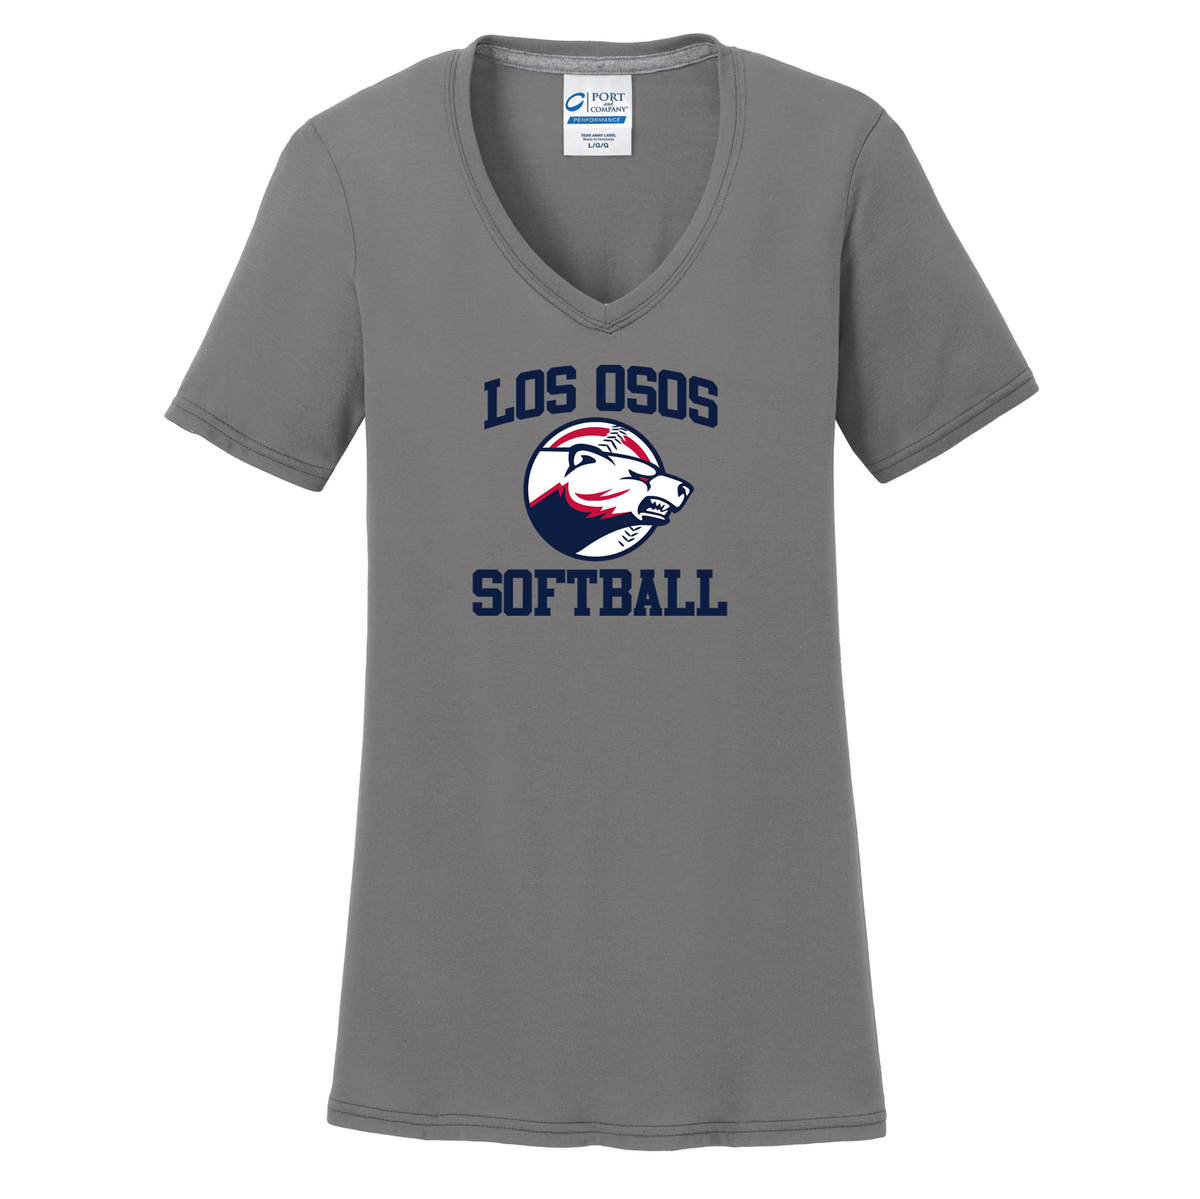 Los Osos Softball  Women's T-Shirt